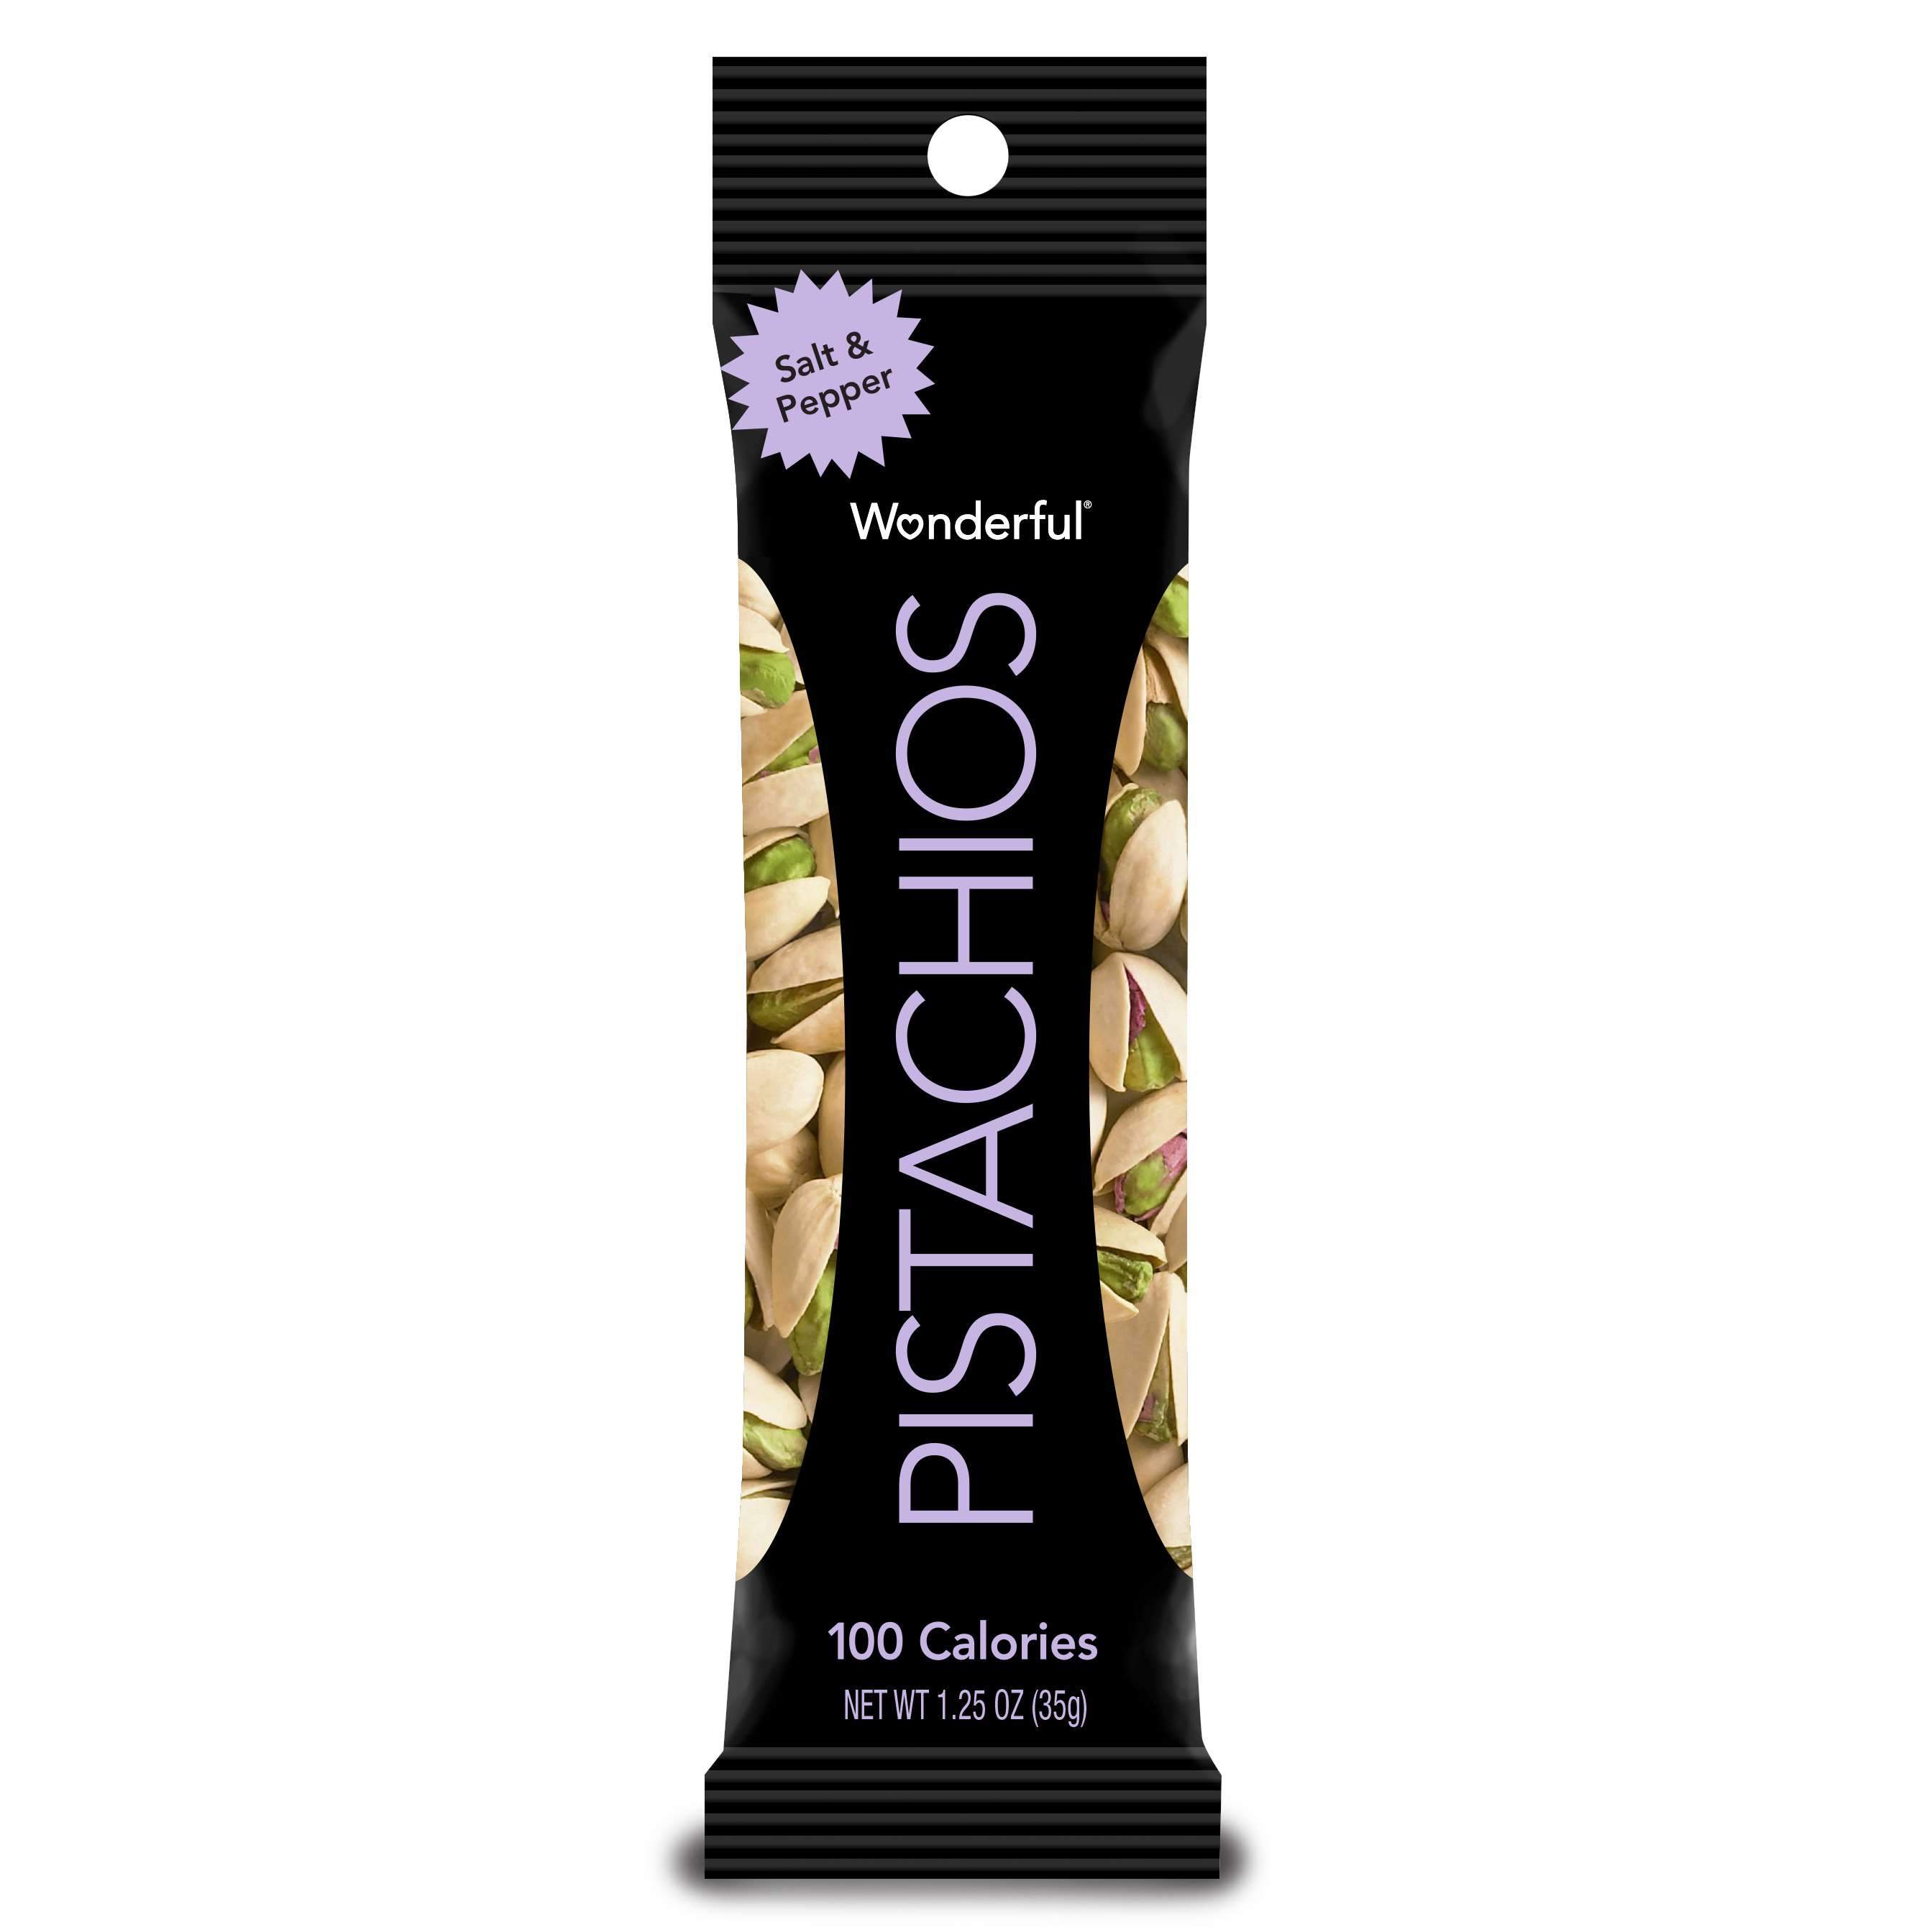 Wonderful Pistachios Wonderful Pistachios & Almonds Salt & Pepper 1.25 Ounce 